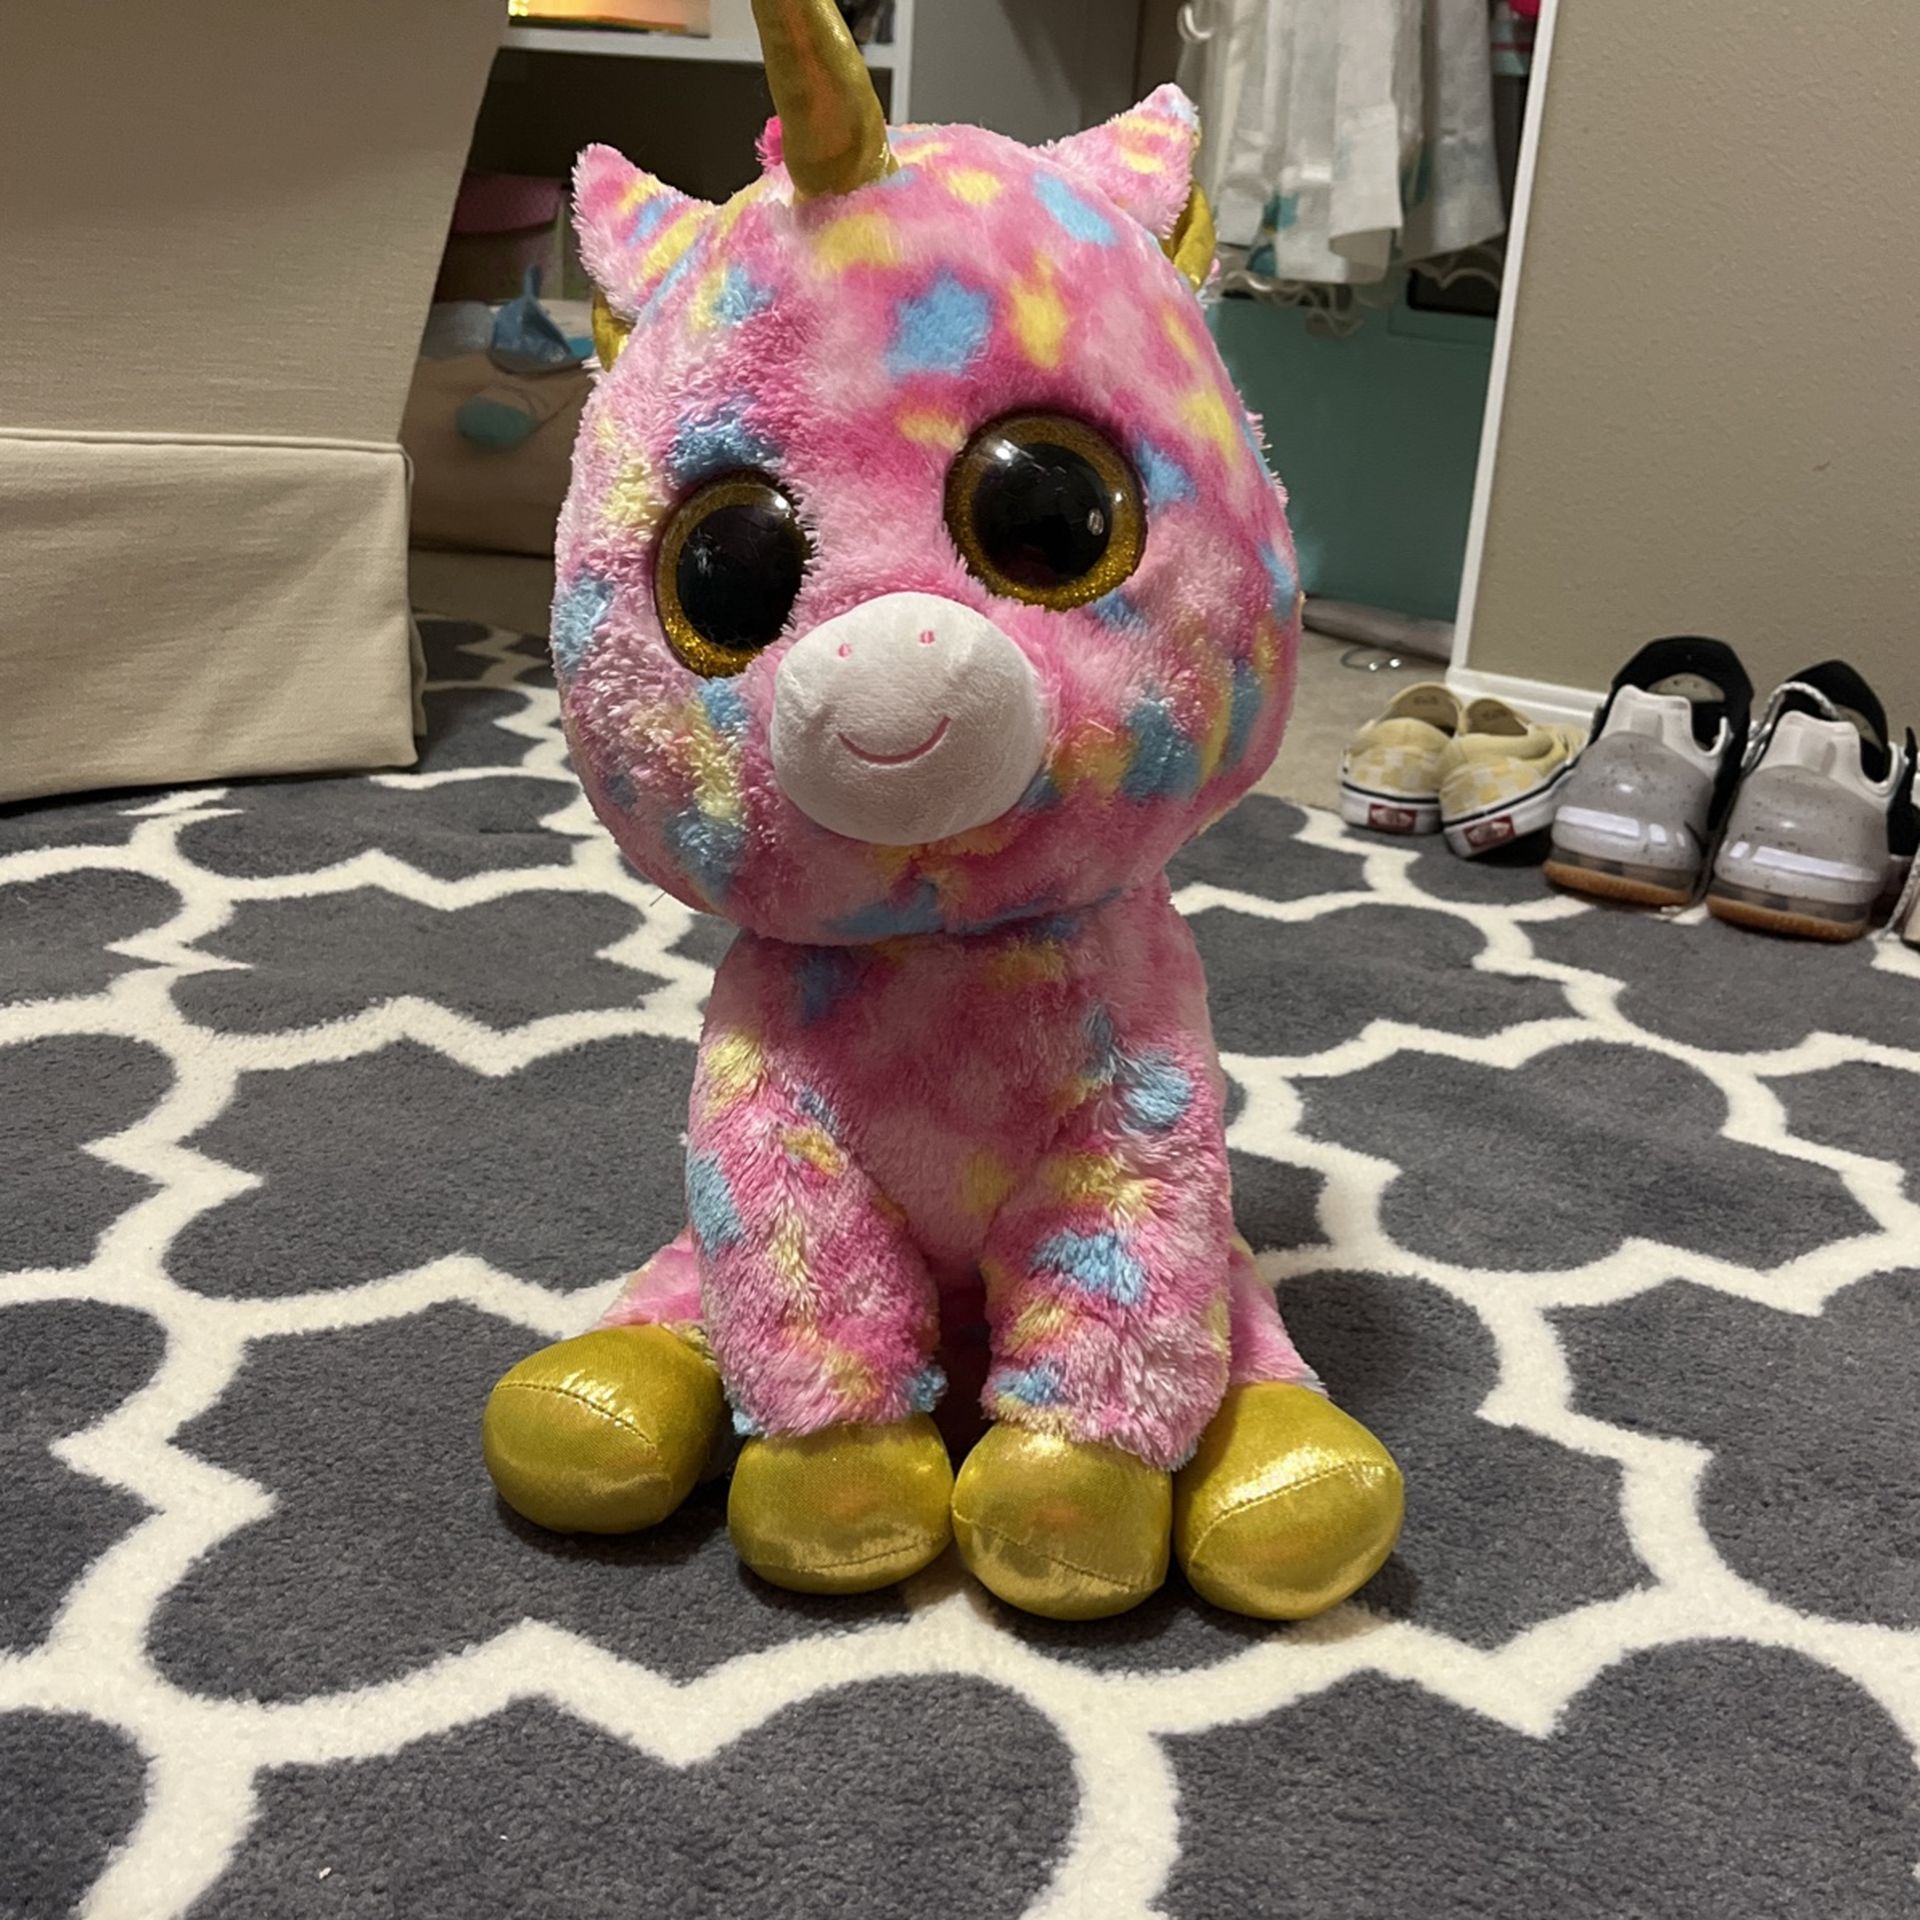 Giant Pink TY unicorn Plush